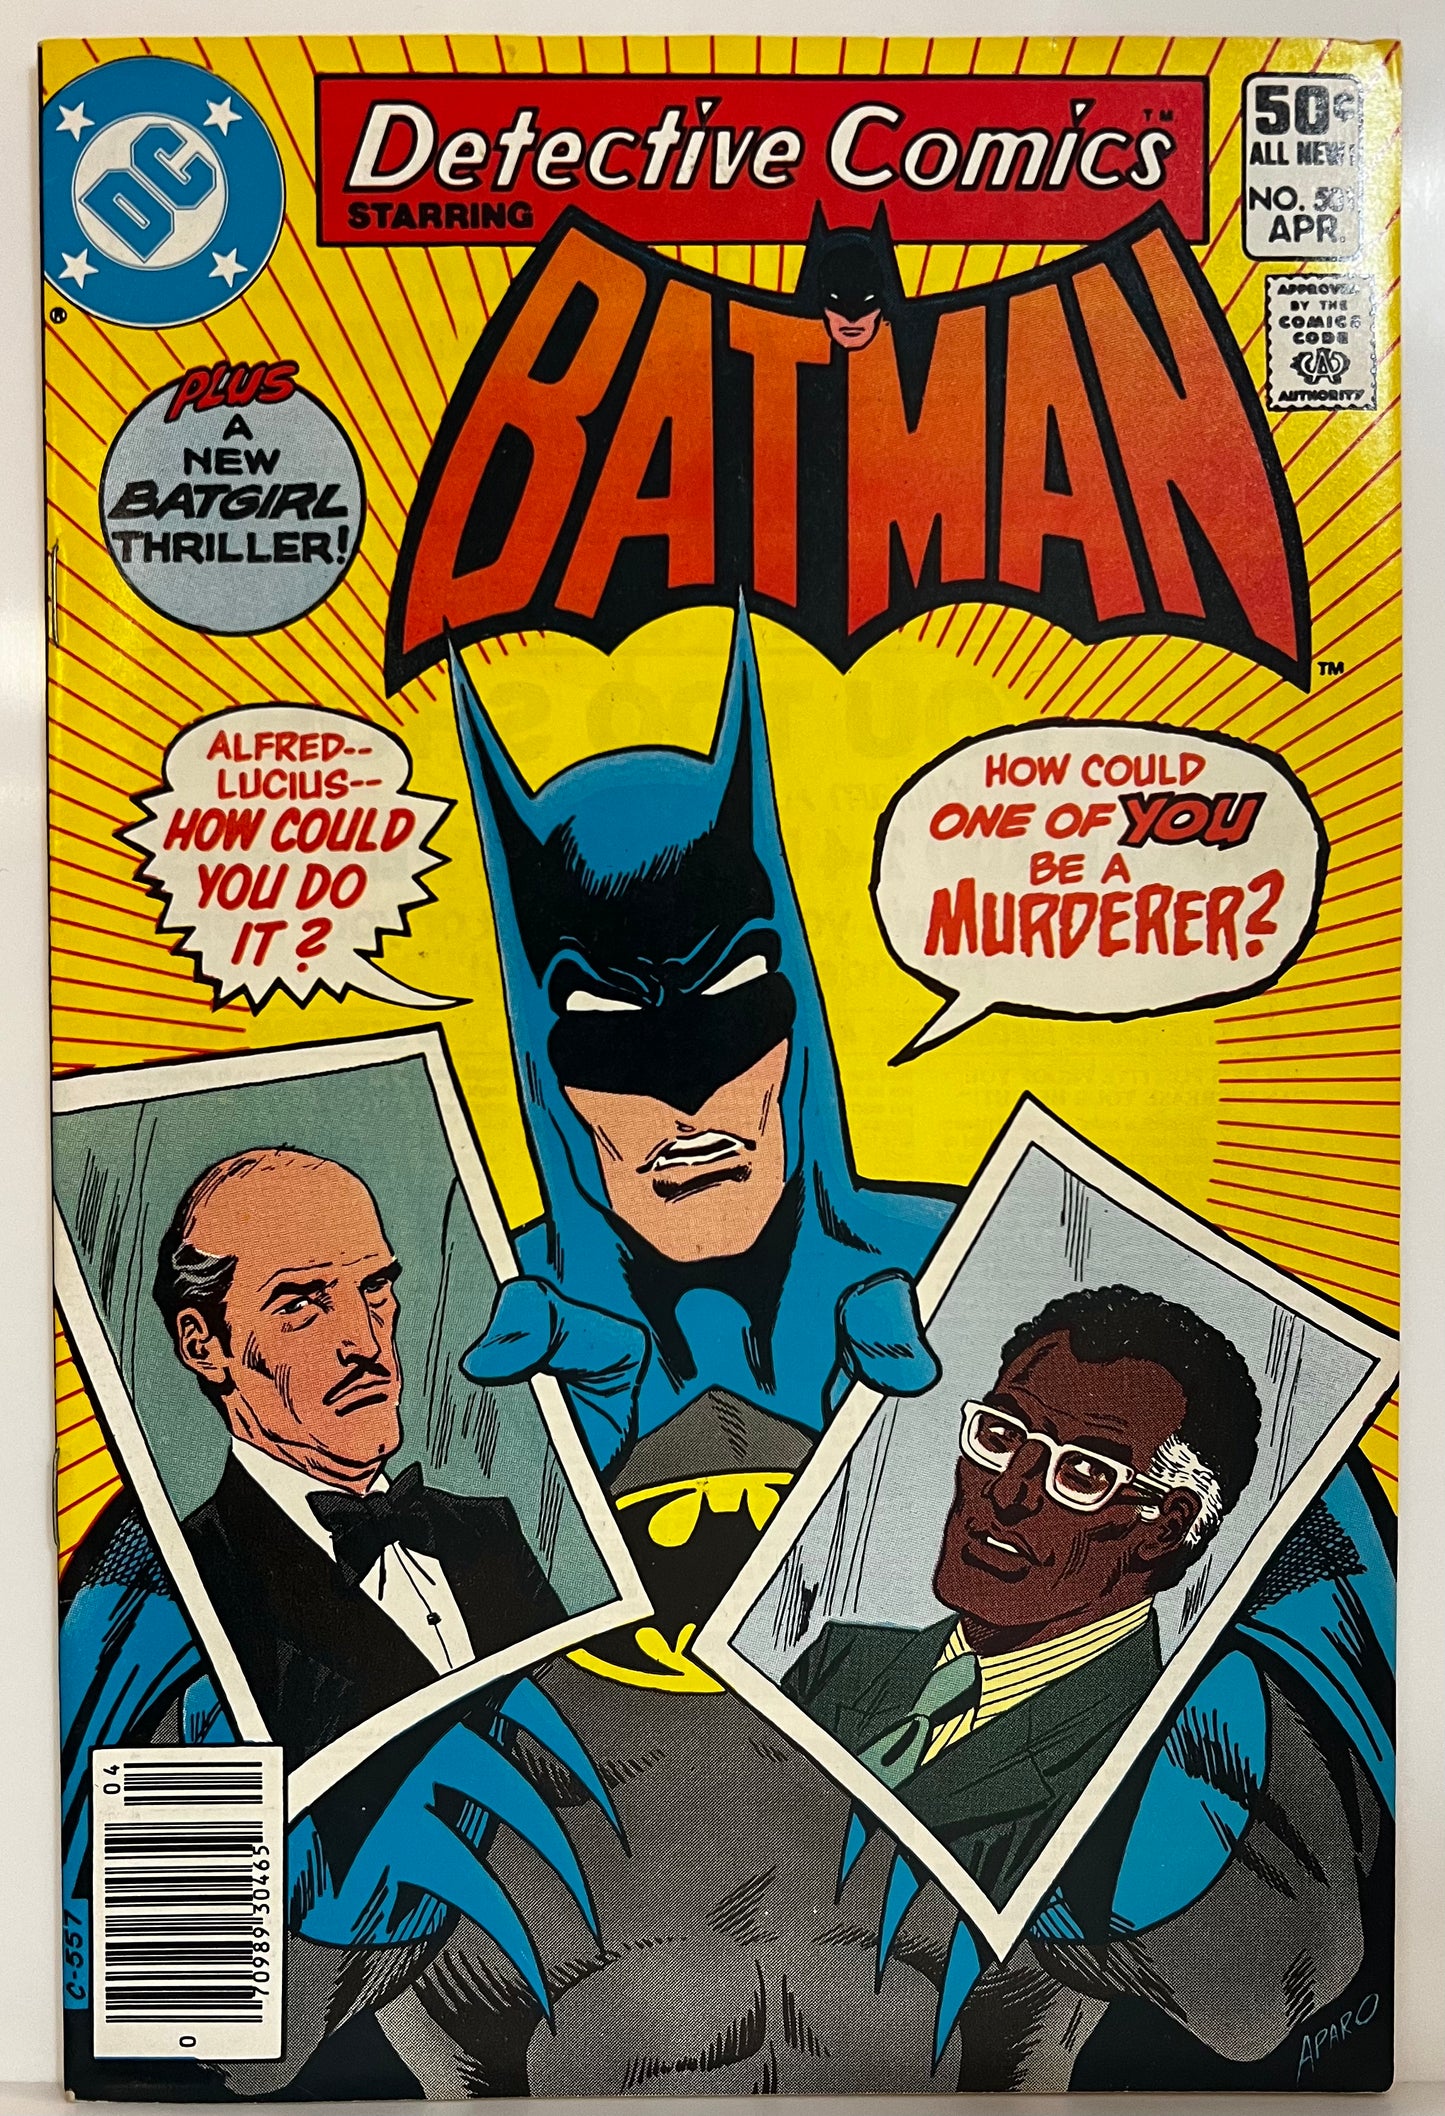 Detective Comics #501